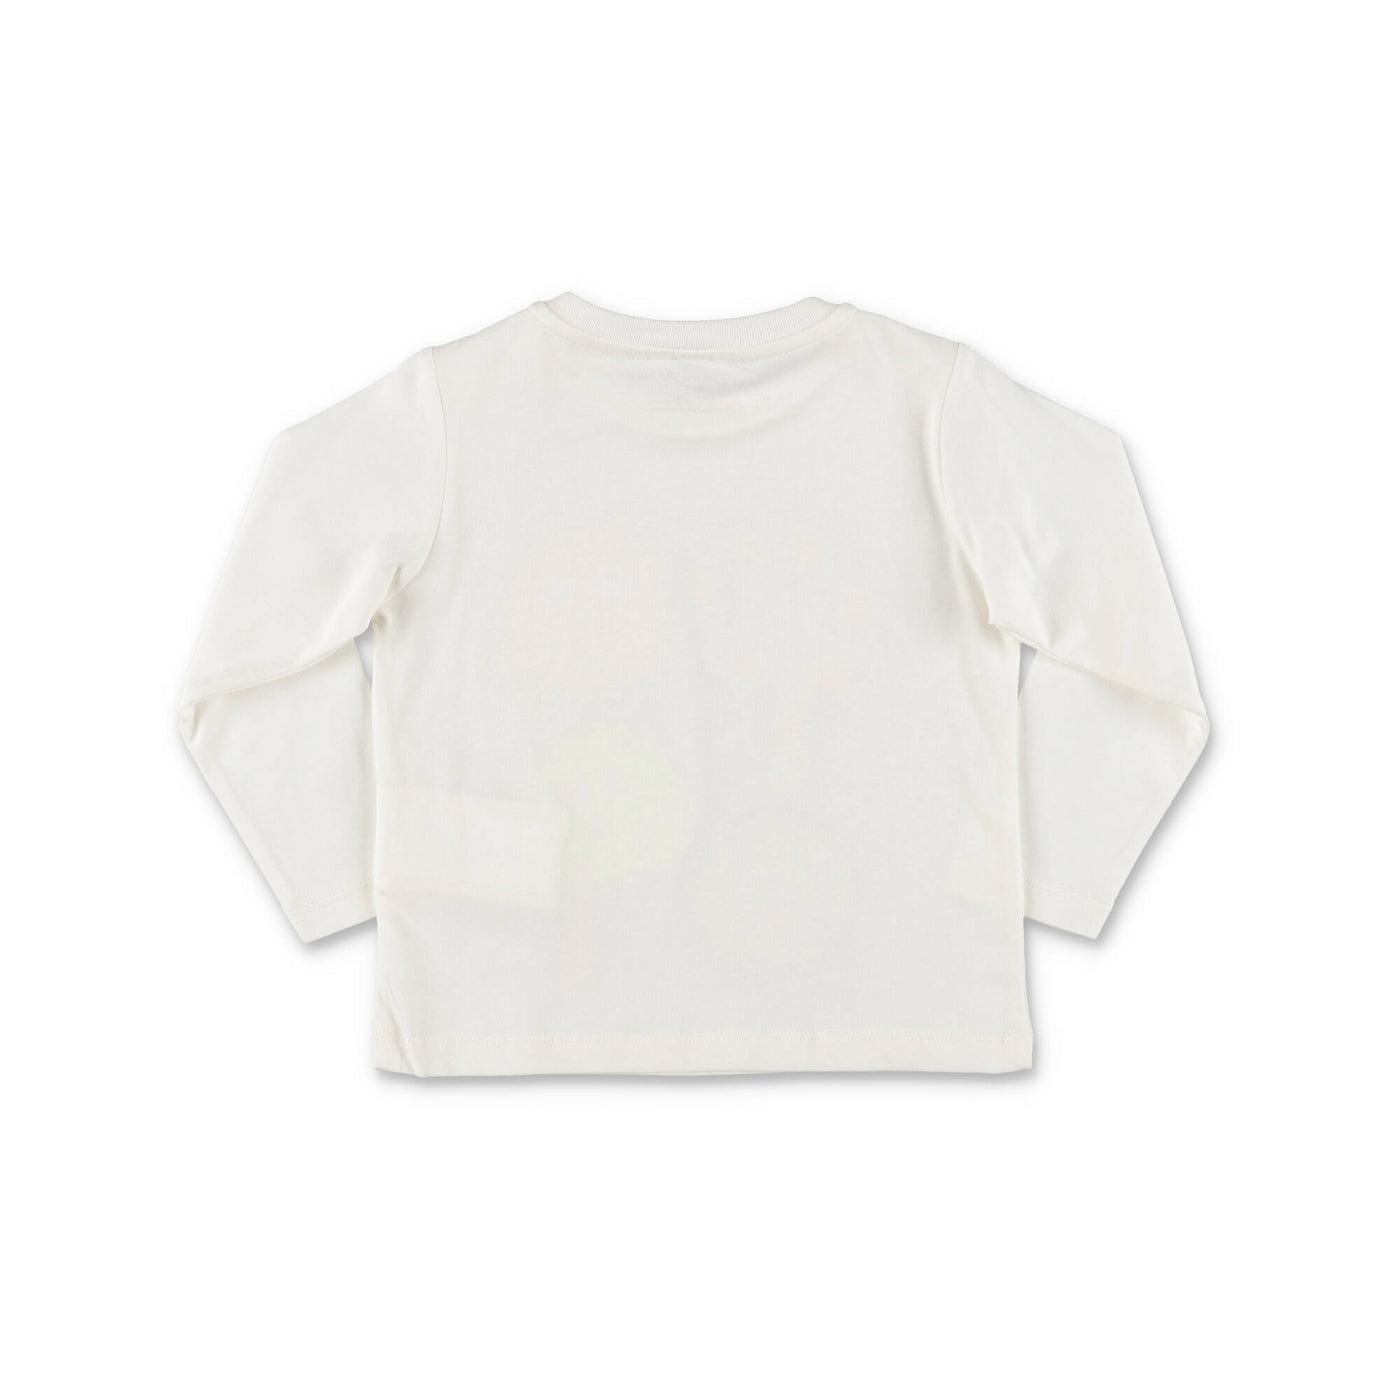 White cotton jersey baby boy STELLA McCARTNEY t-shirt | Carofiglio Junior